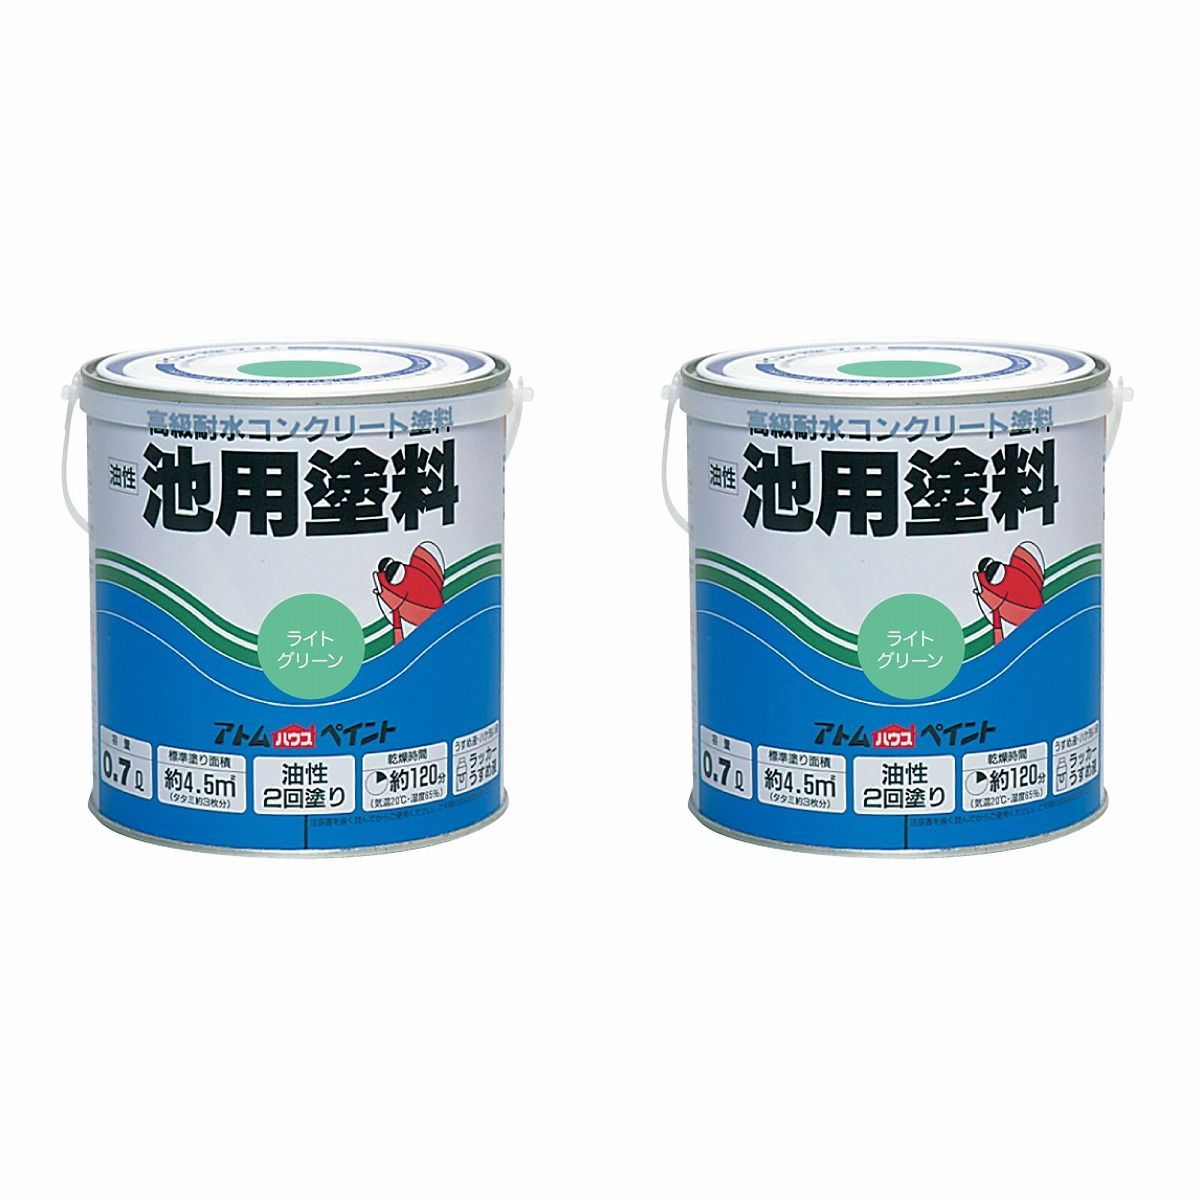 アトムハウスペイント 油性池用塗料0.7L ライトグリーン 2缶セット【BT-56】 バックティースショップ メルカリ